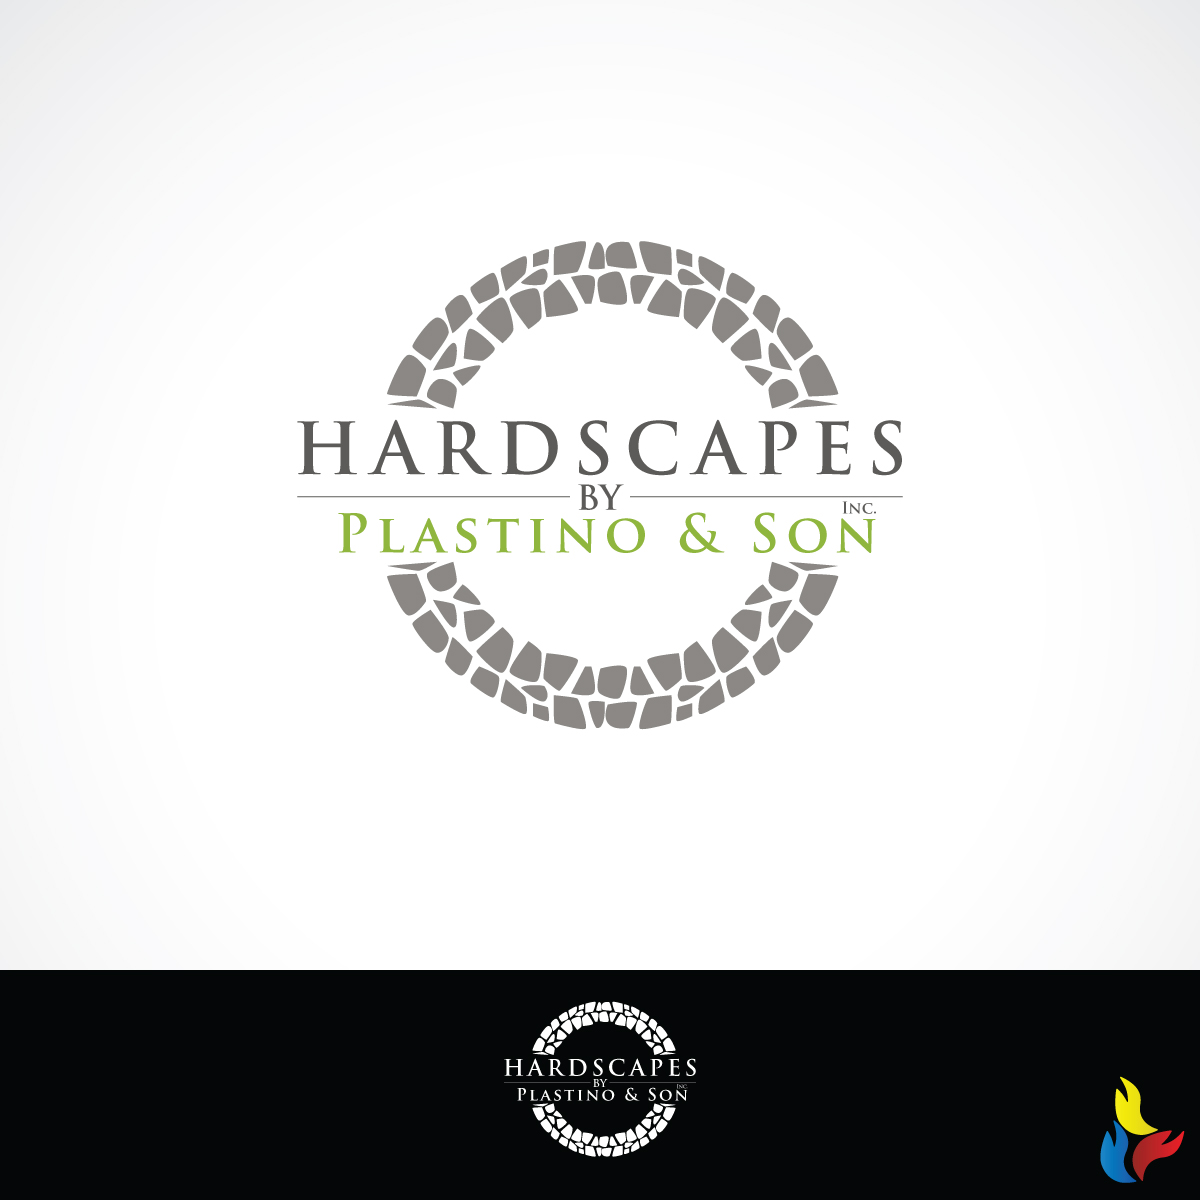 hardscape logo ideas 3